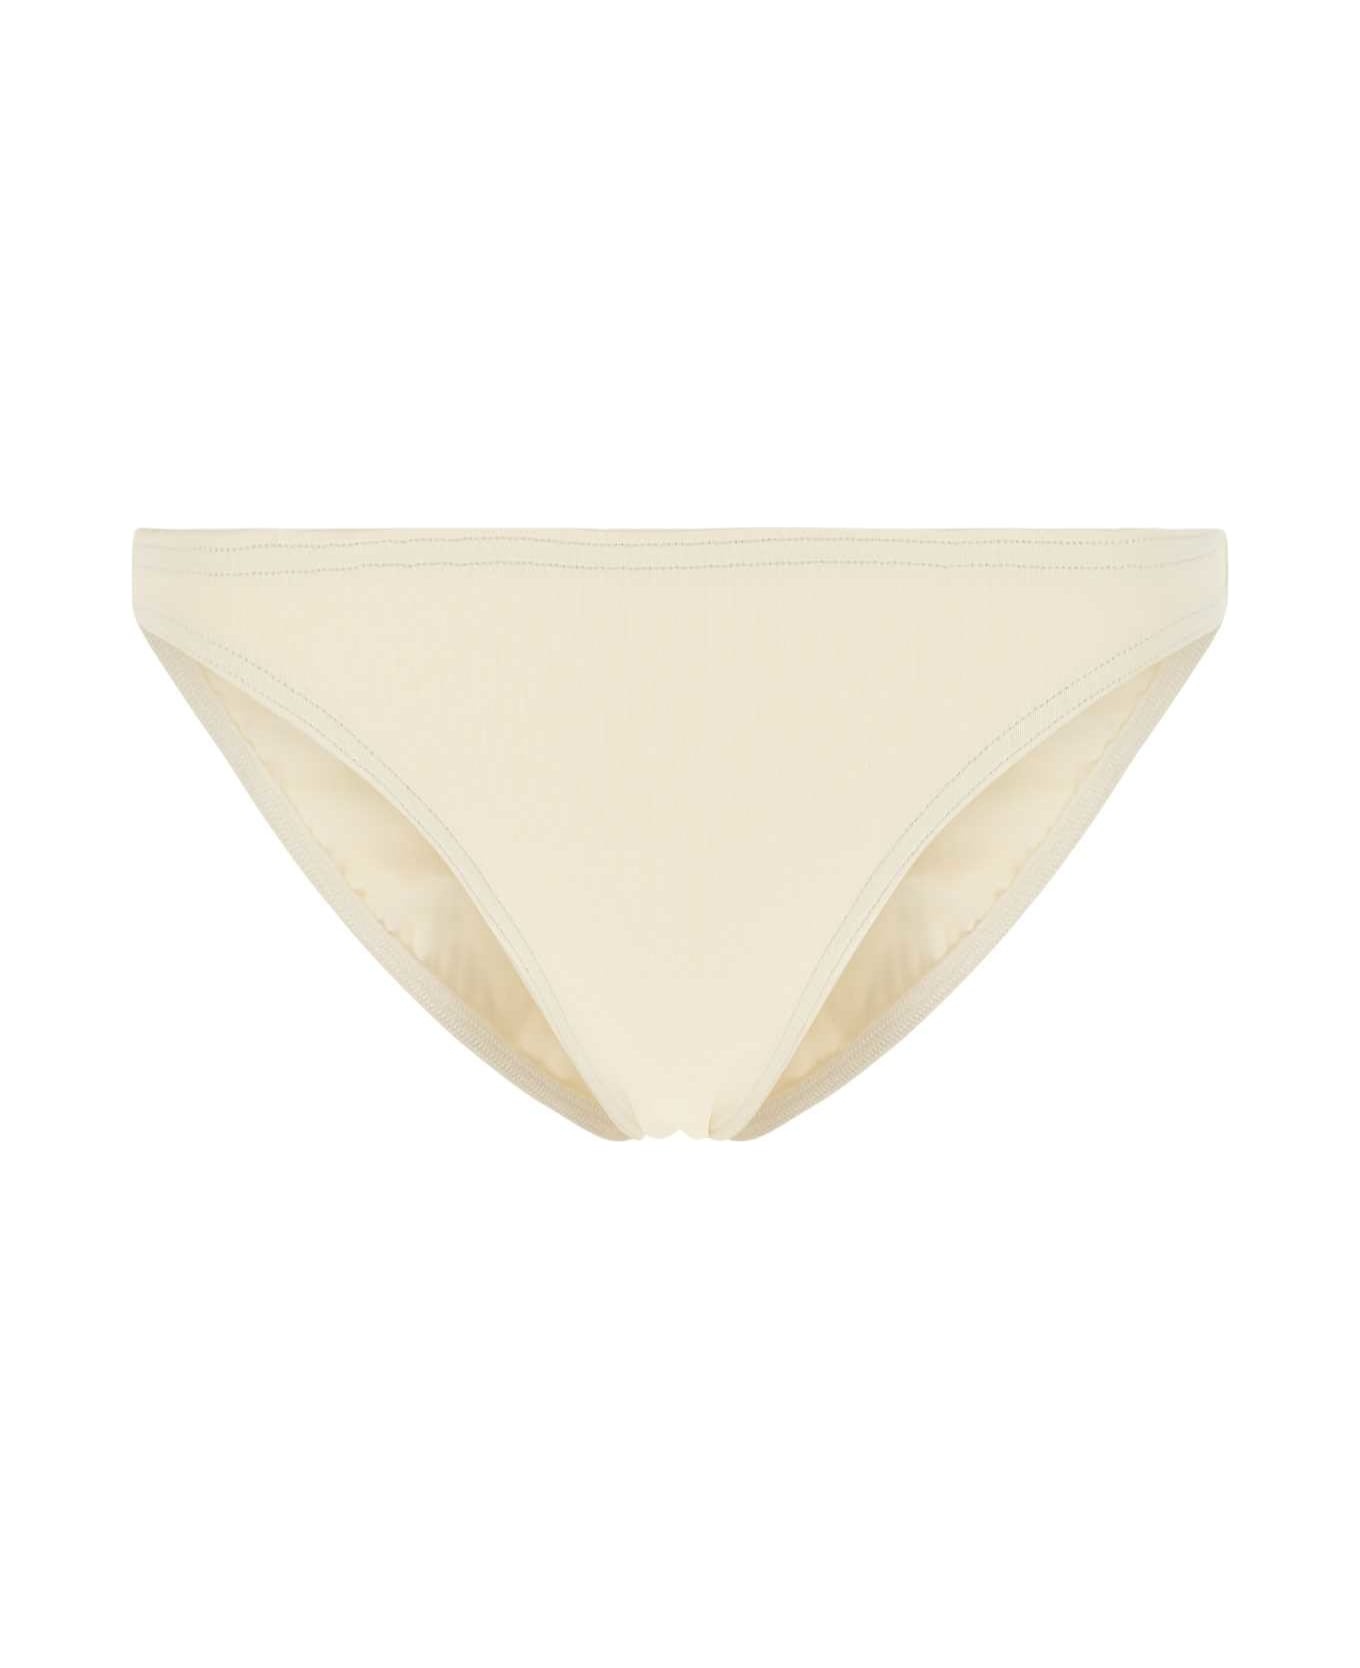 Ivory Stretch Nylon Bikini Bottom - 1